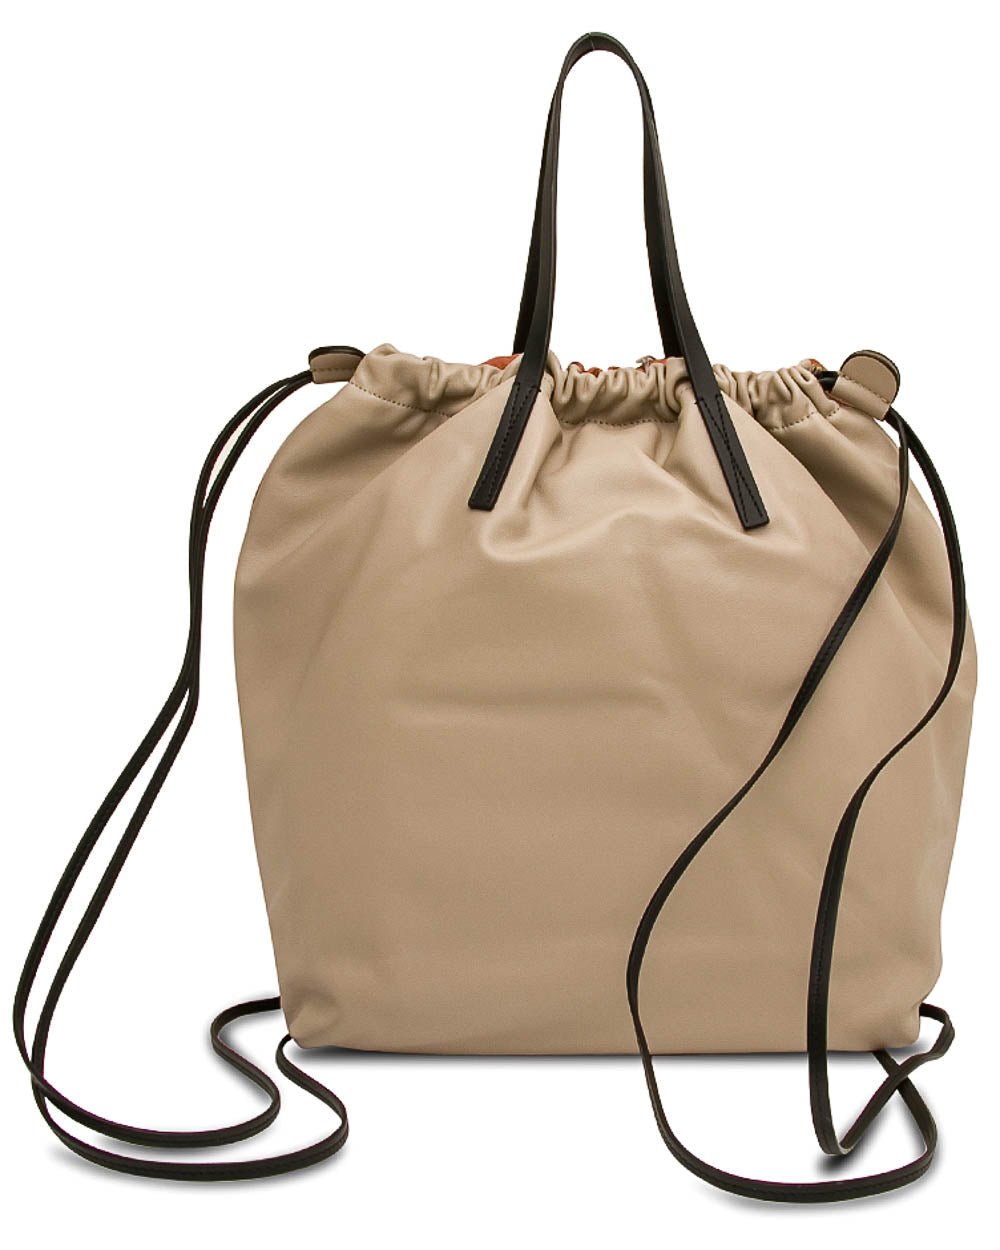 Gusset Backpack Bag in Chili Light Camel